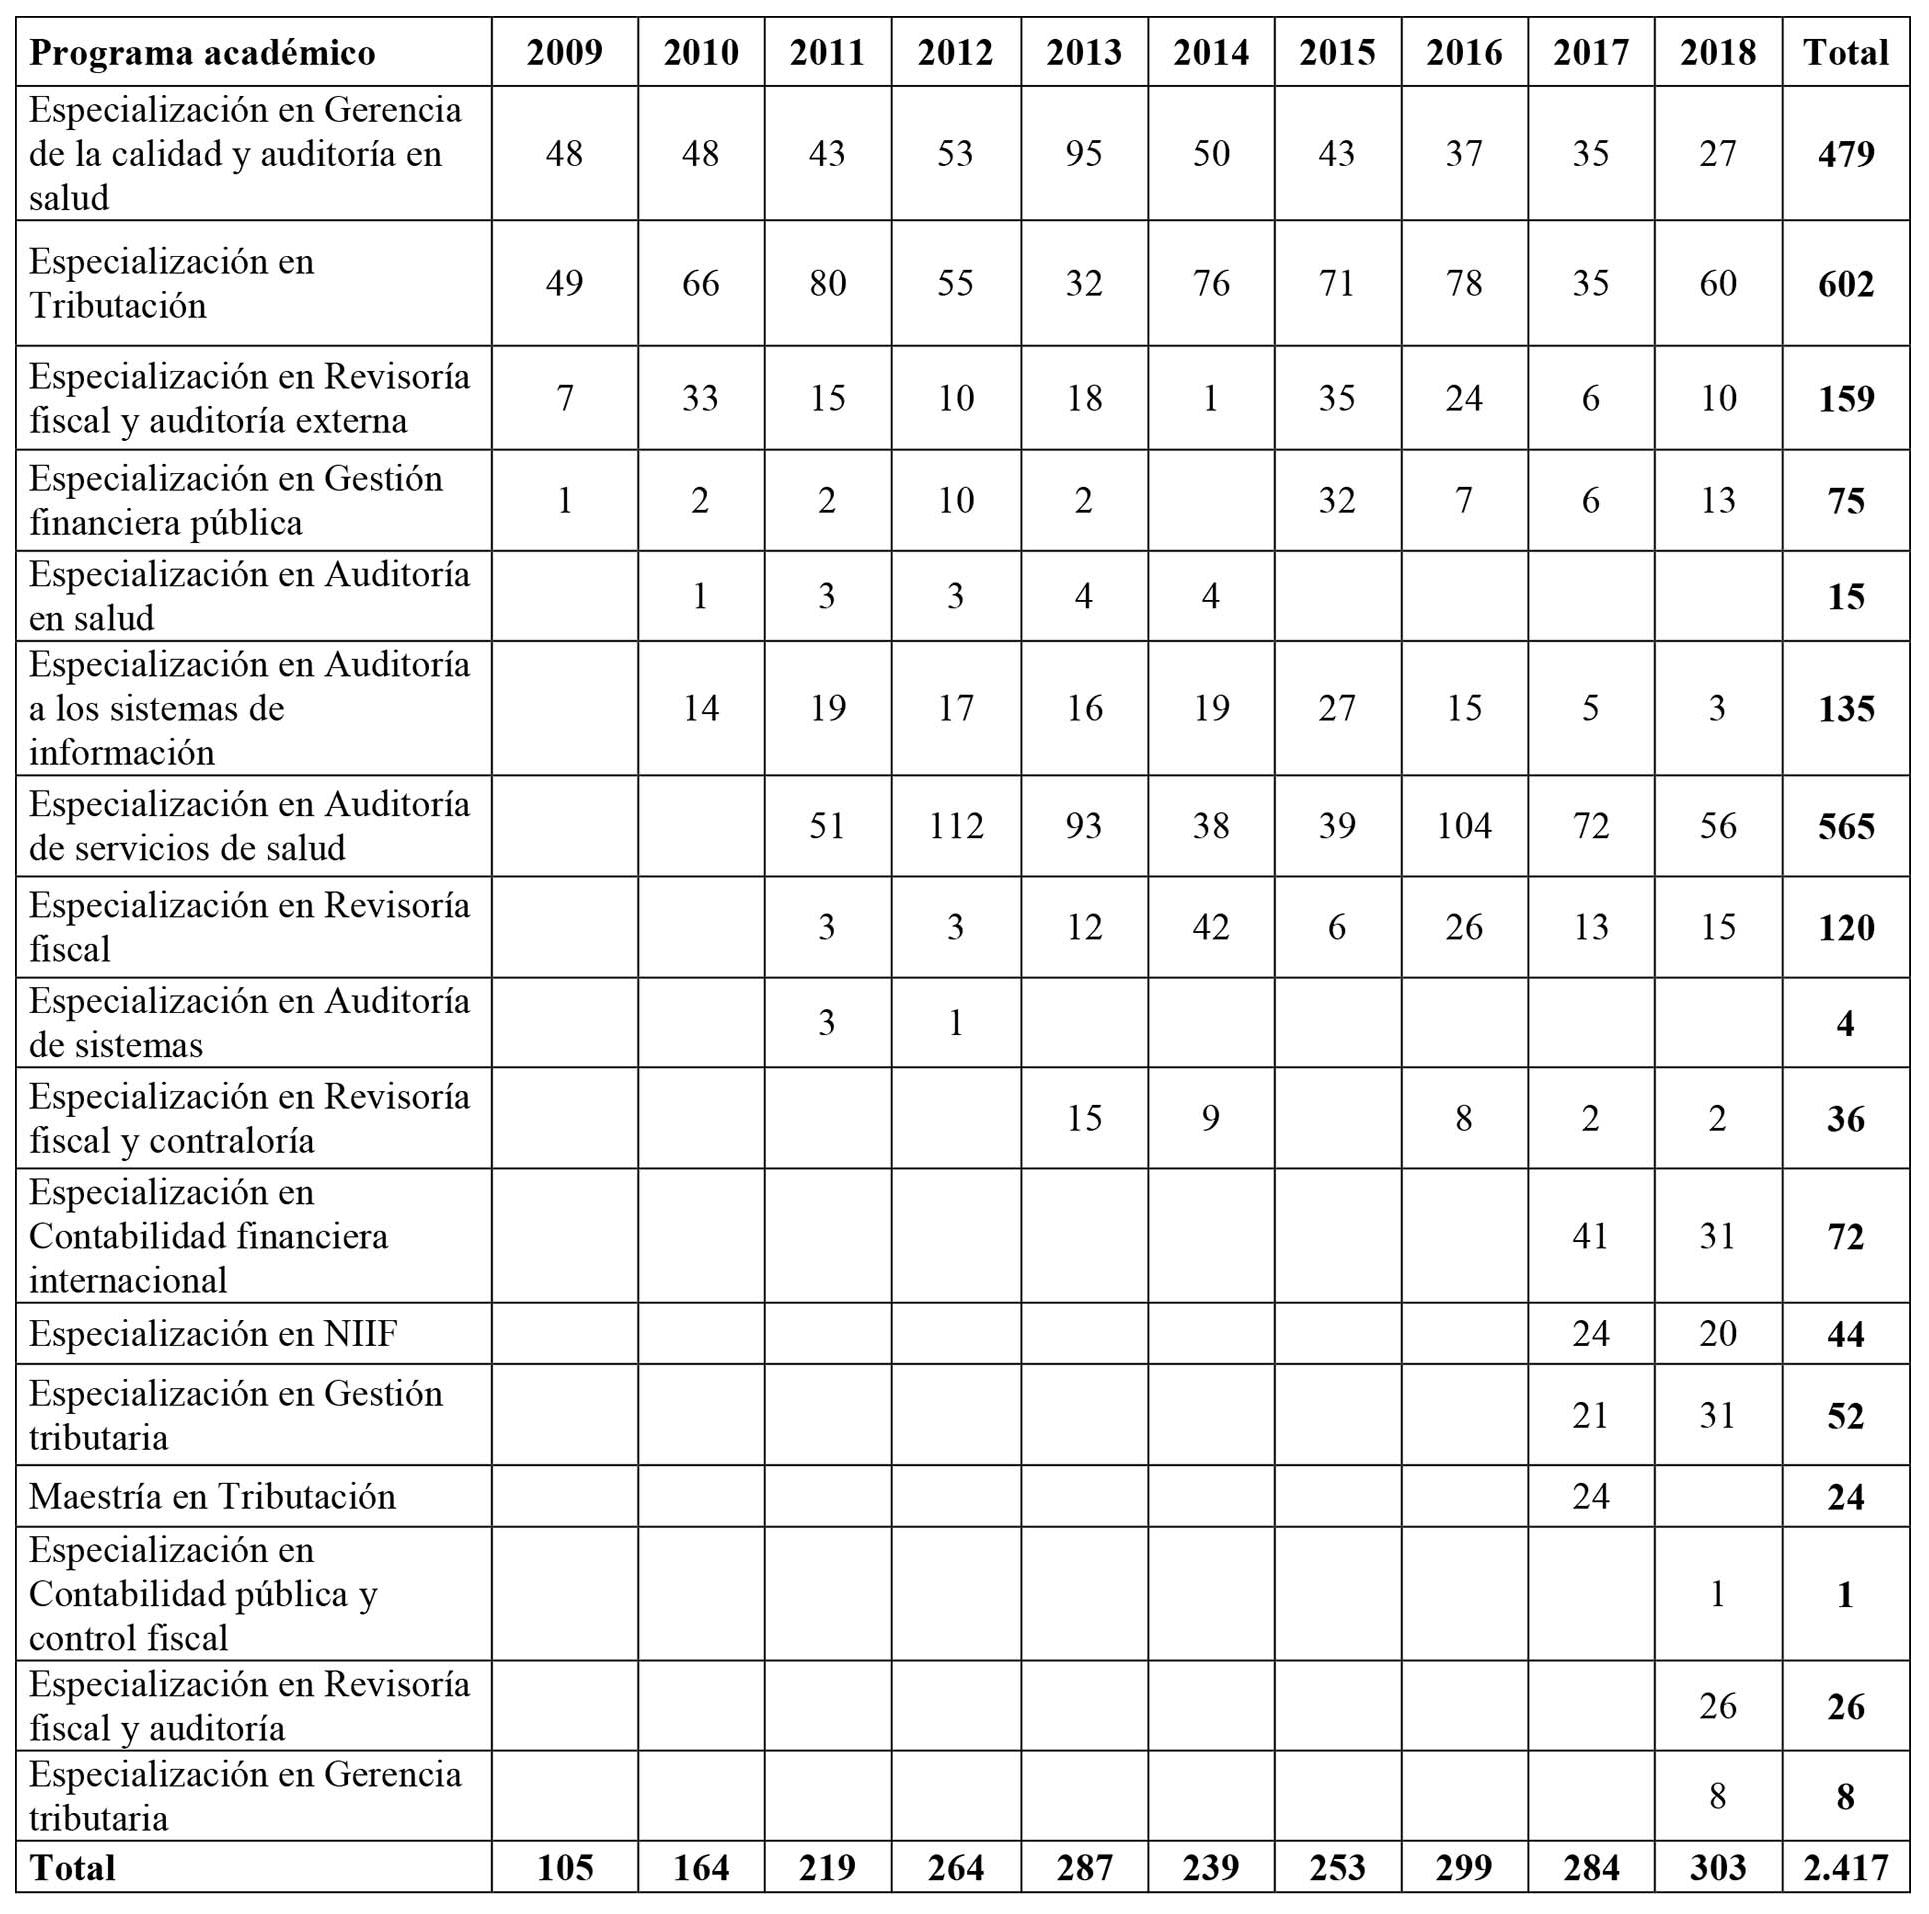 Resumen de egresados en programas contables en el nivel de posgrados, 2009-2018